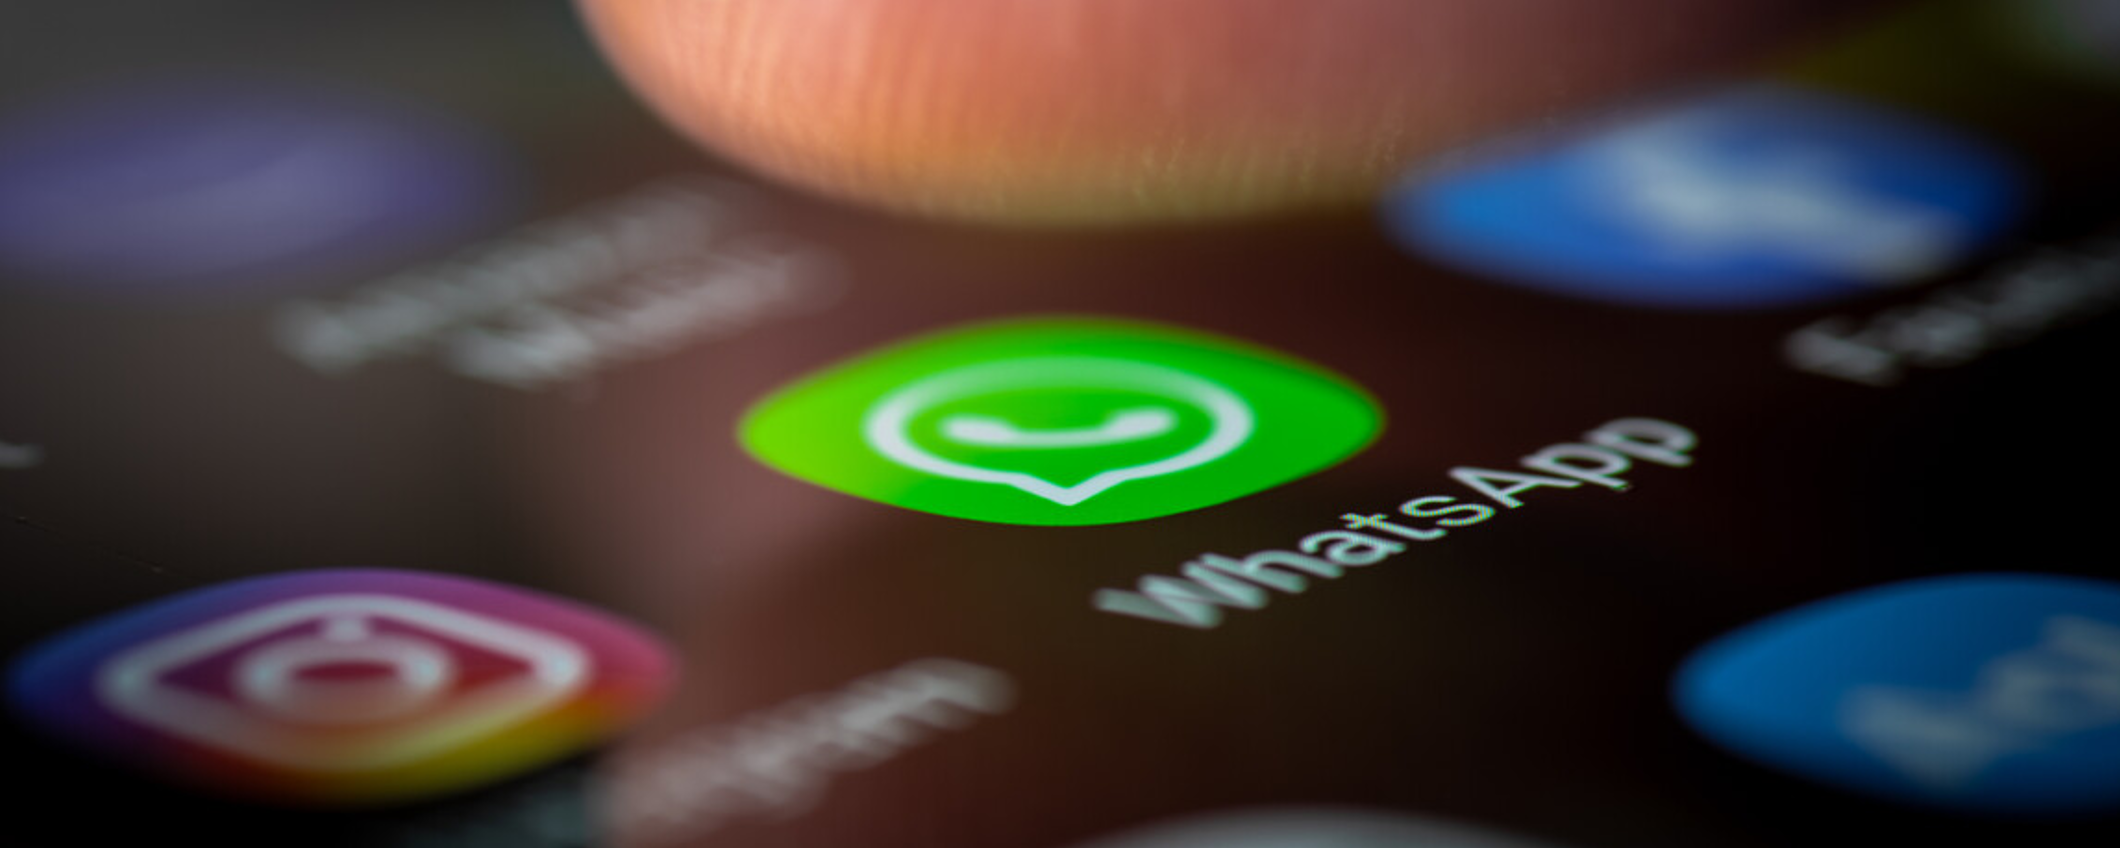 WhatsApp: in arrivo l'alternativa perfetta all'autenticazione via SMS